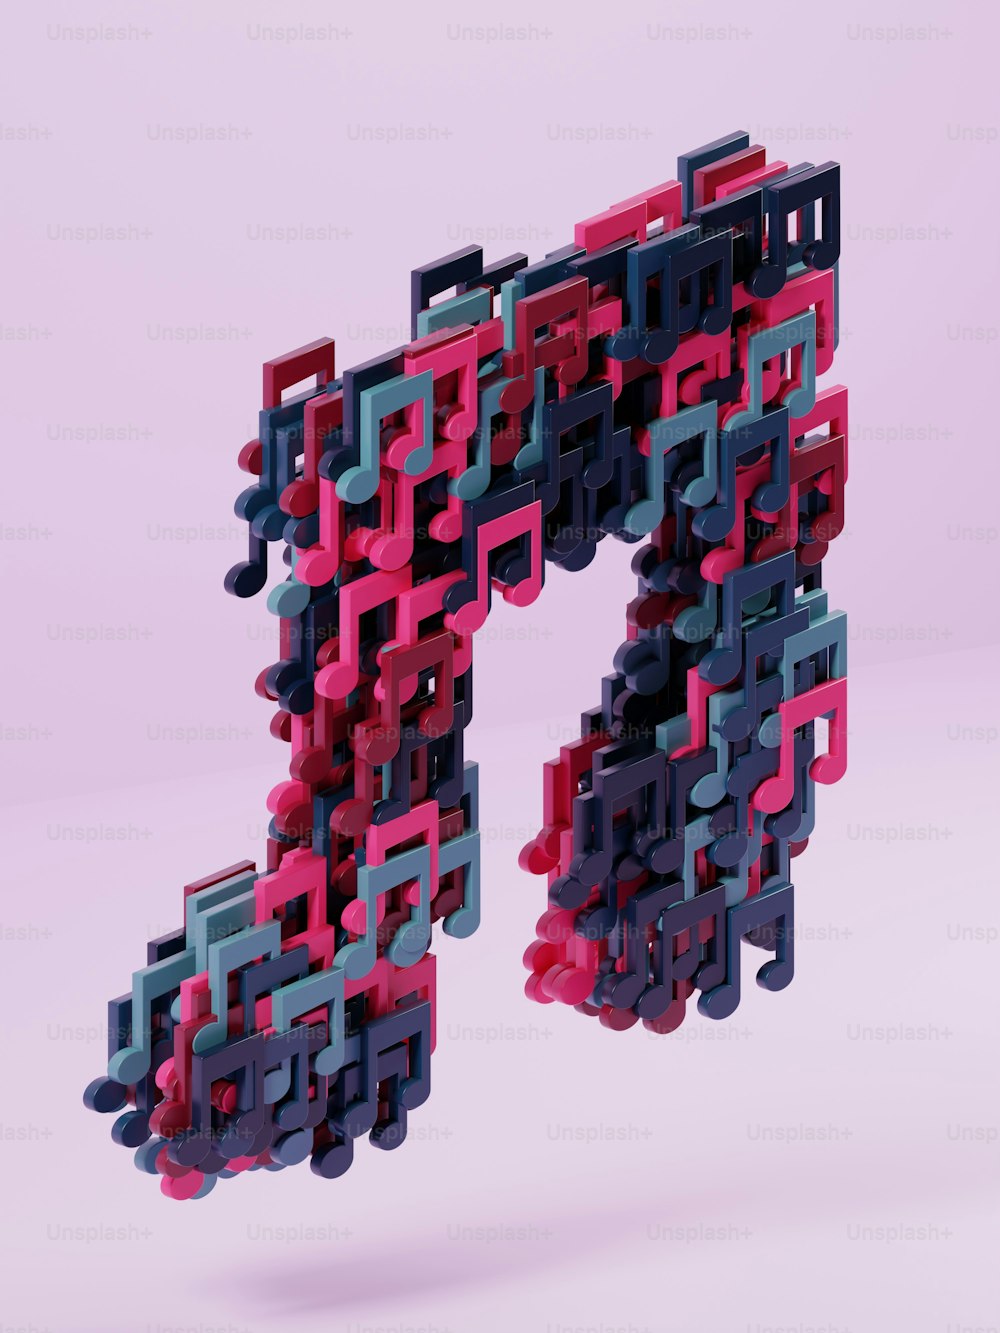 Ein 3D-Bild eines Buchstabens aus verschiedenfarbigen Blöcken